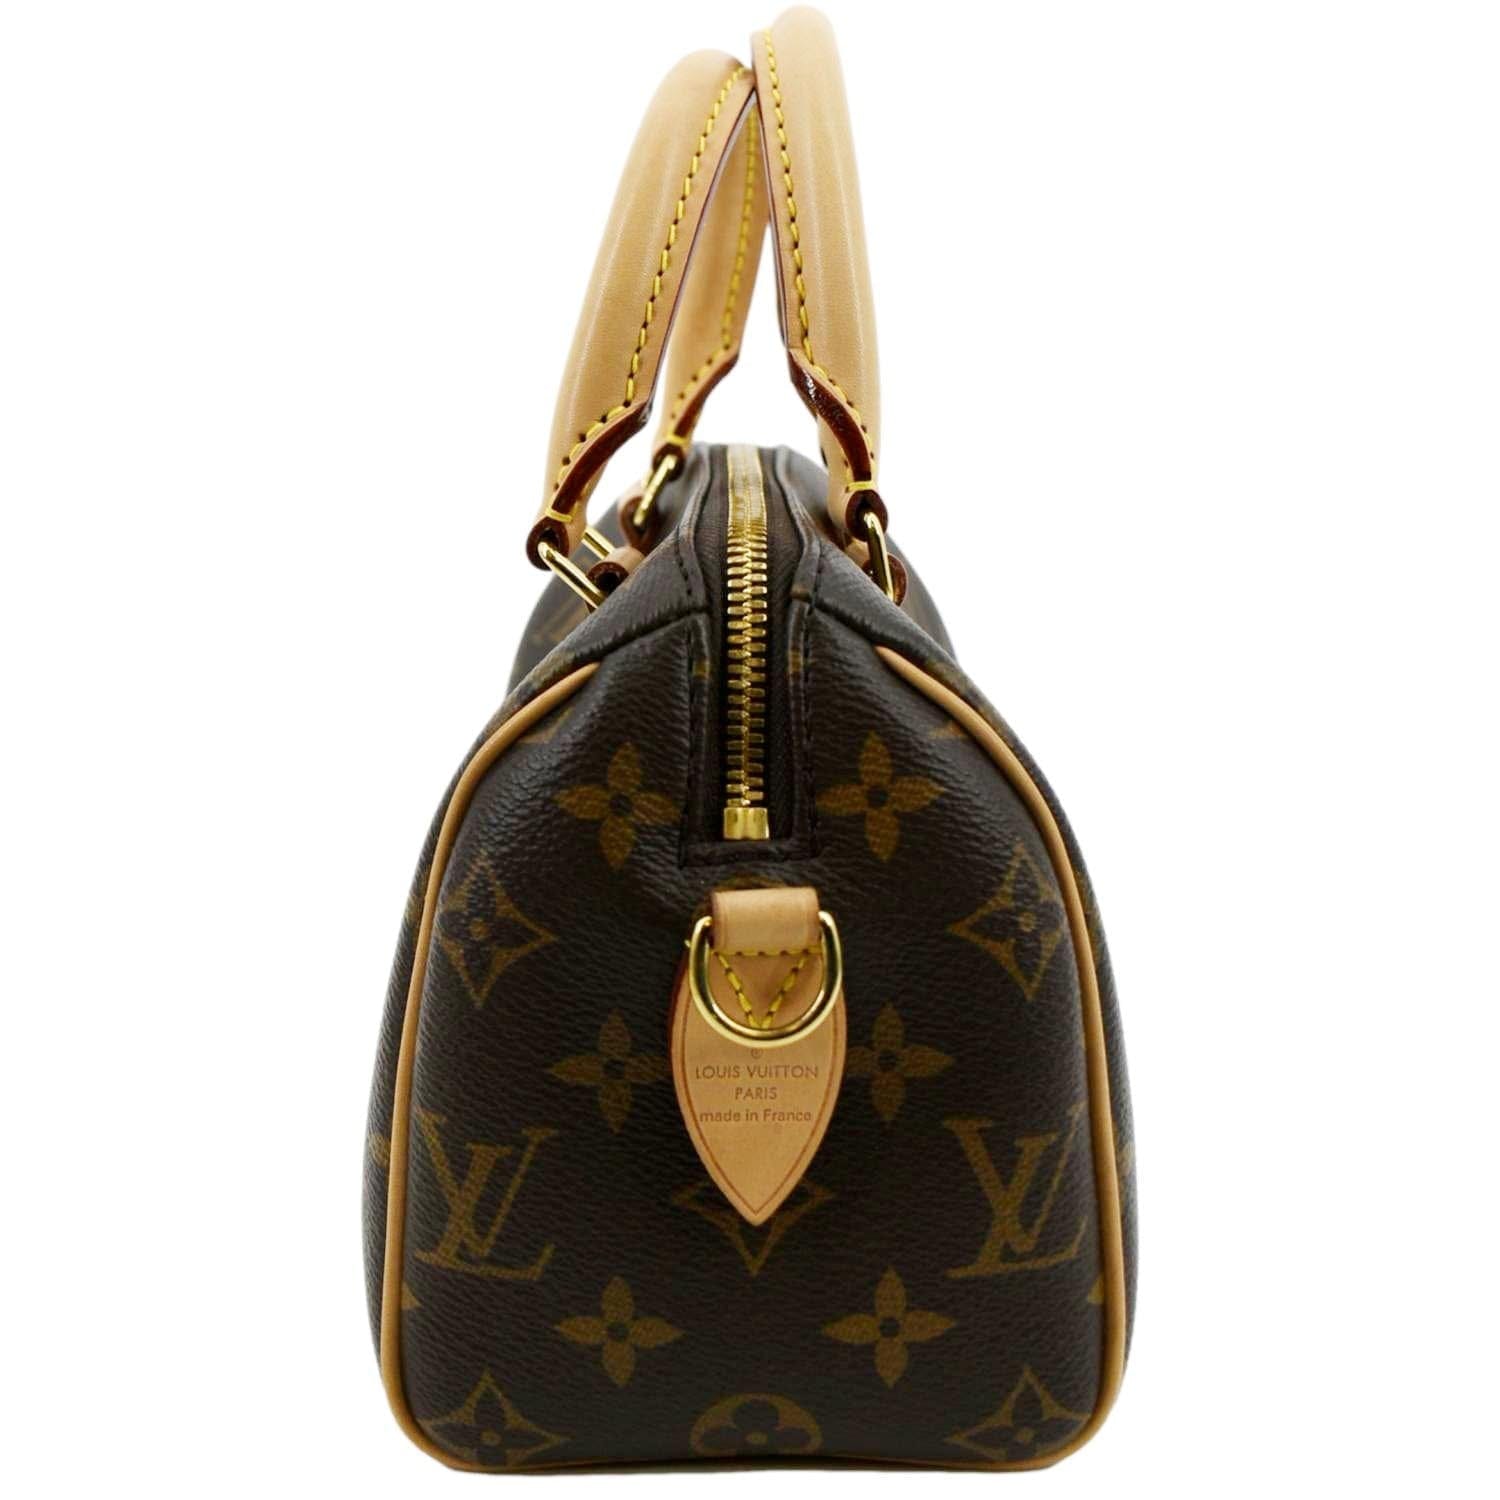 Louis Vuitton Giant Speedy Bandouliere 20 Shoulder Bag